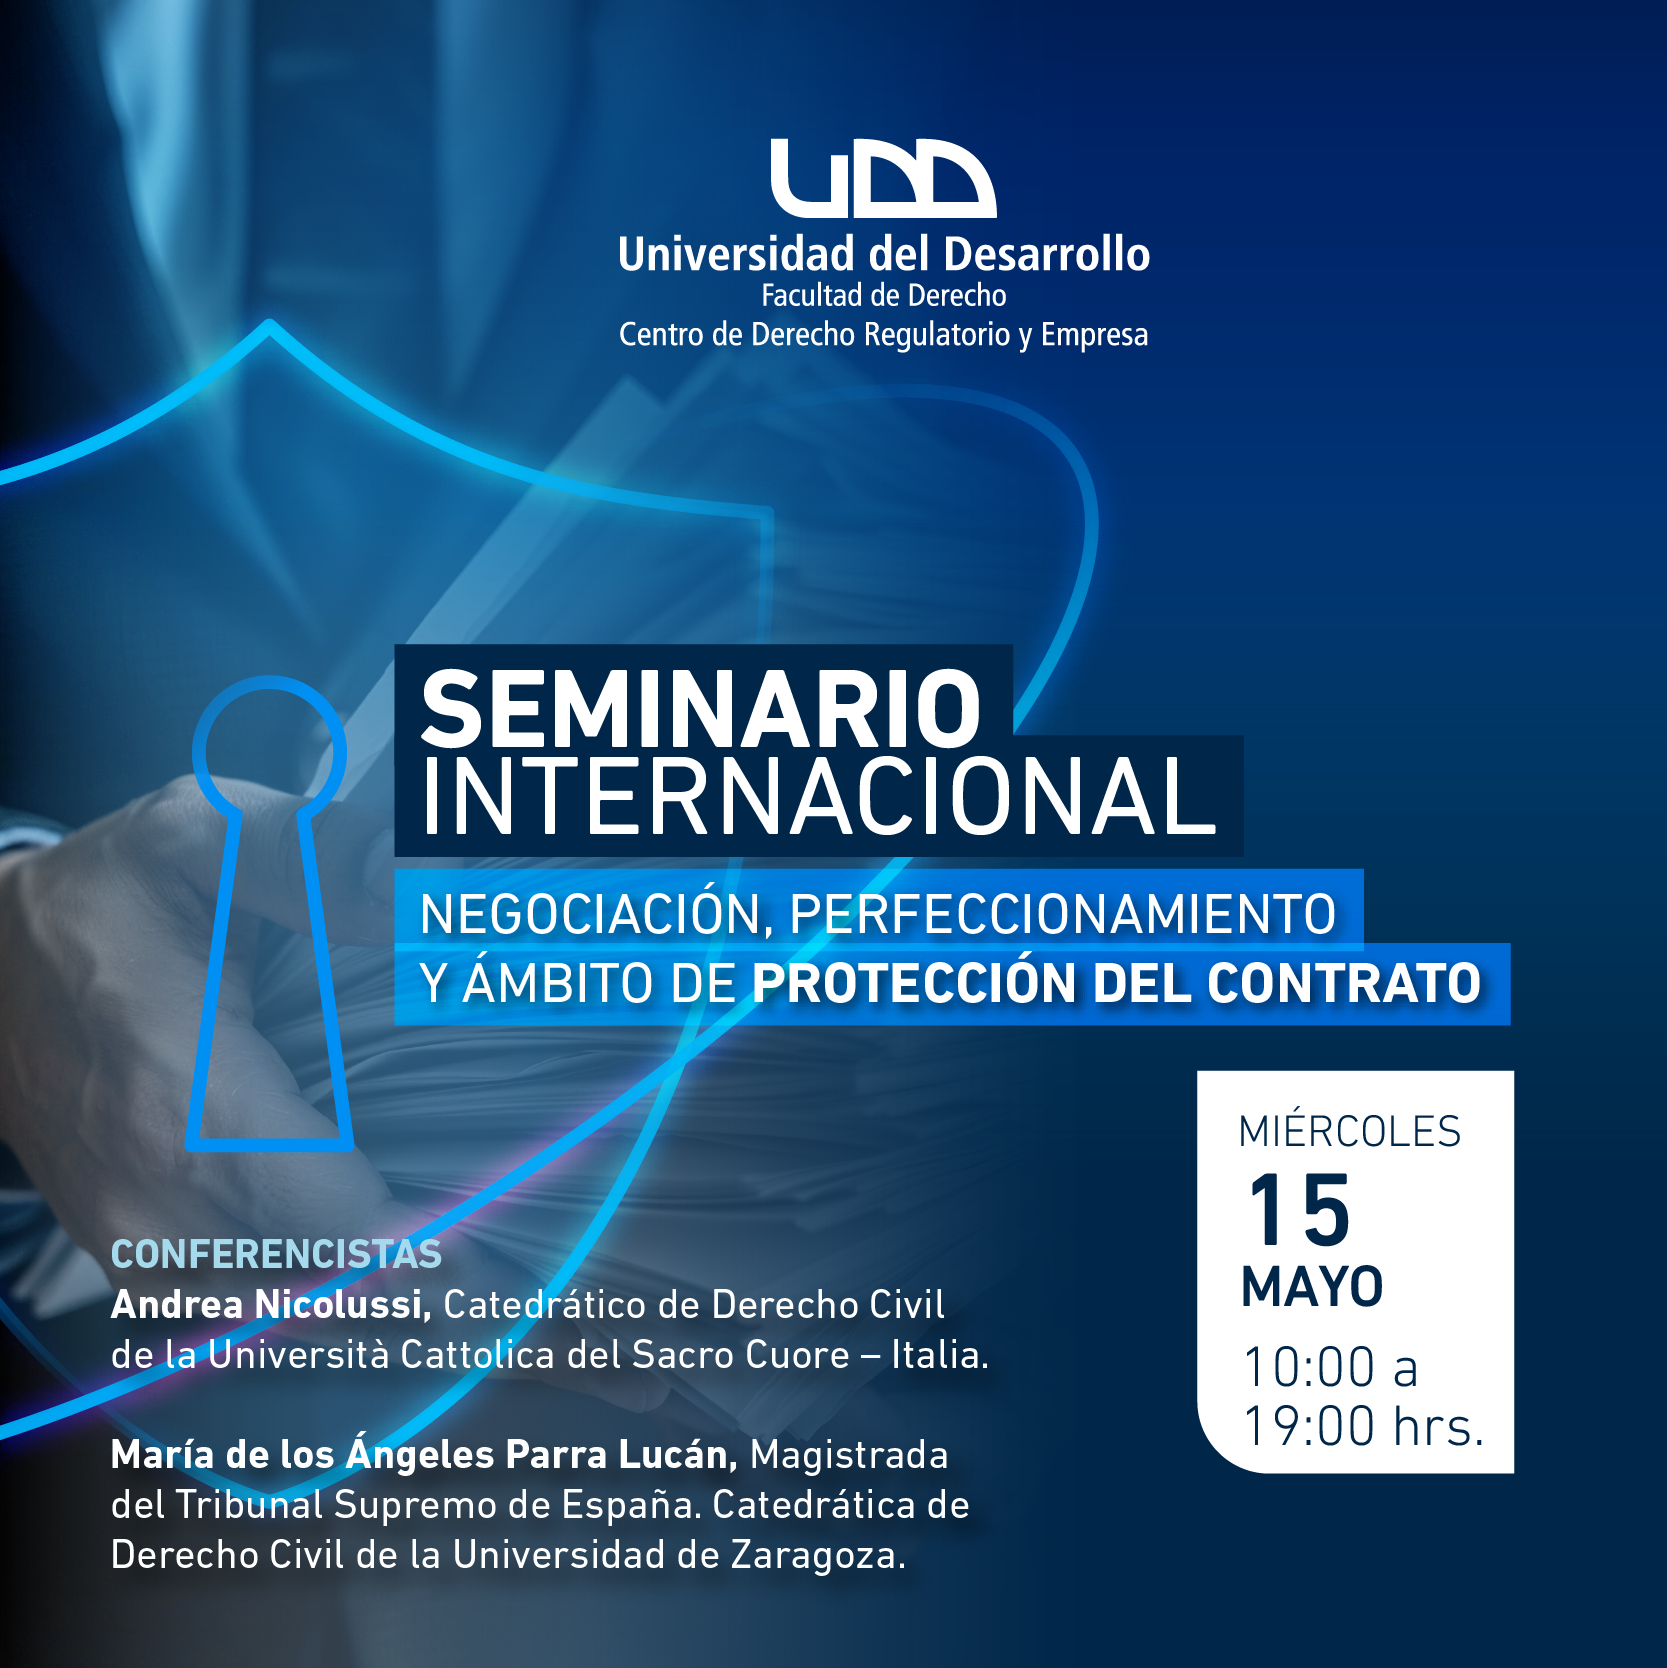 Seminario Internacional: “Negociación, perfeccionamiento y ámbito de protección del contrato”.